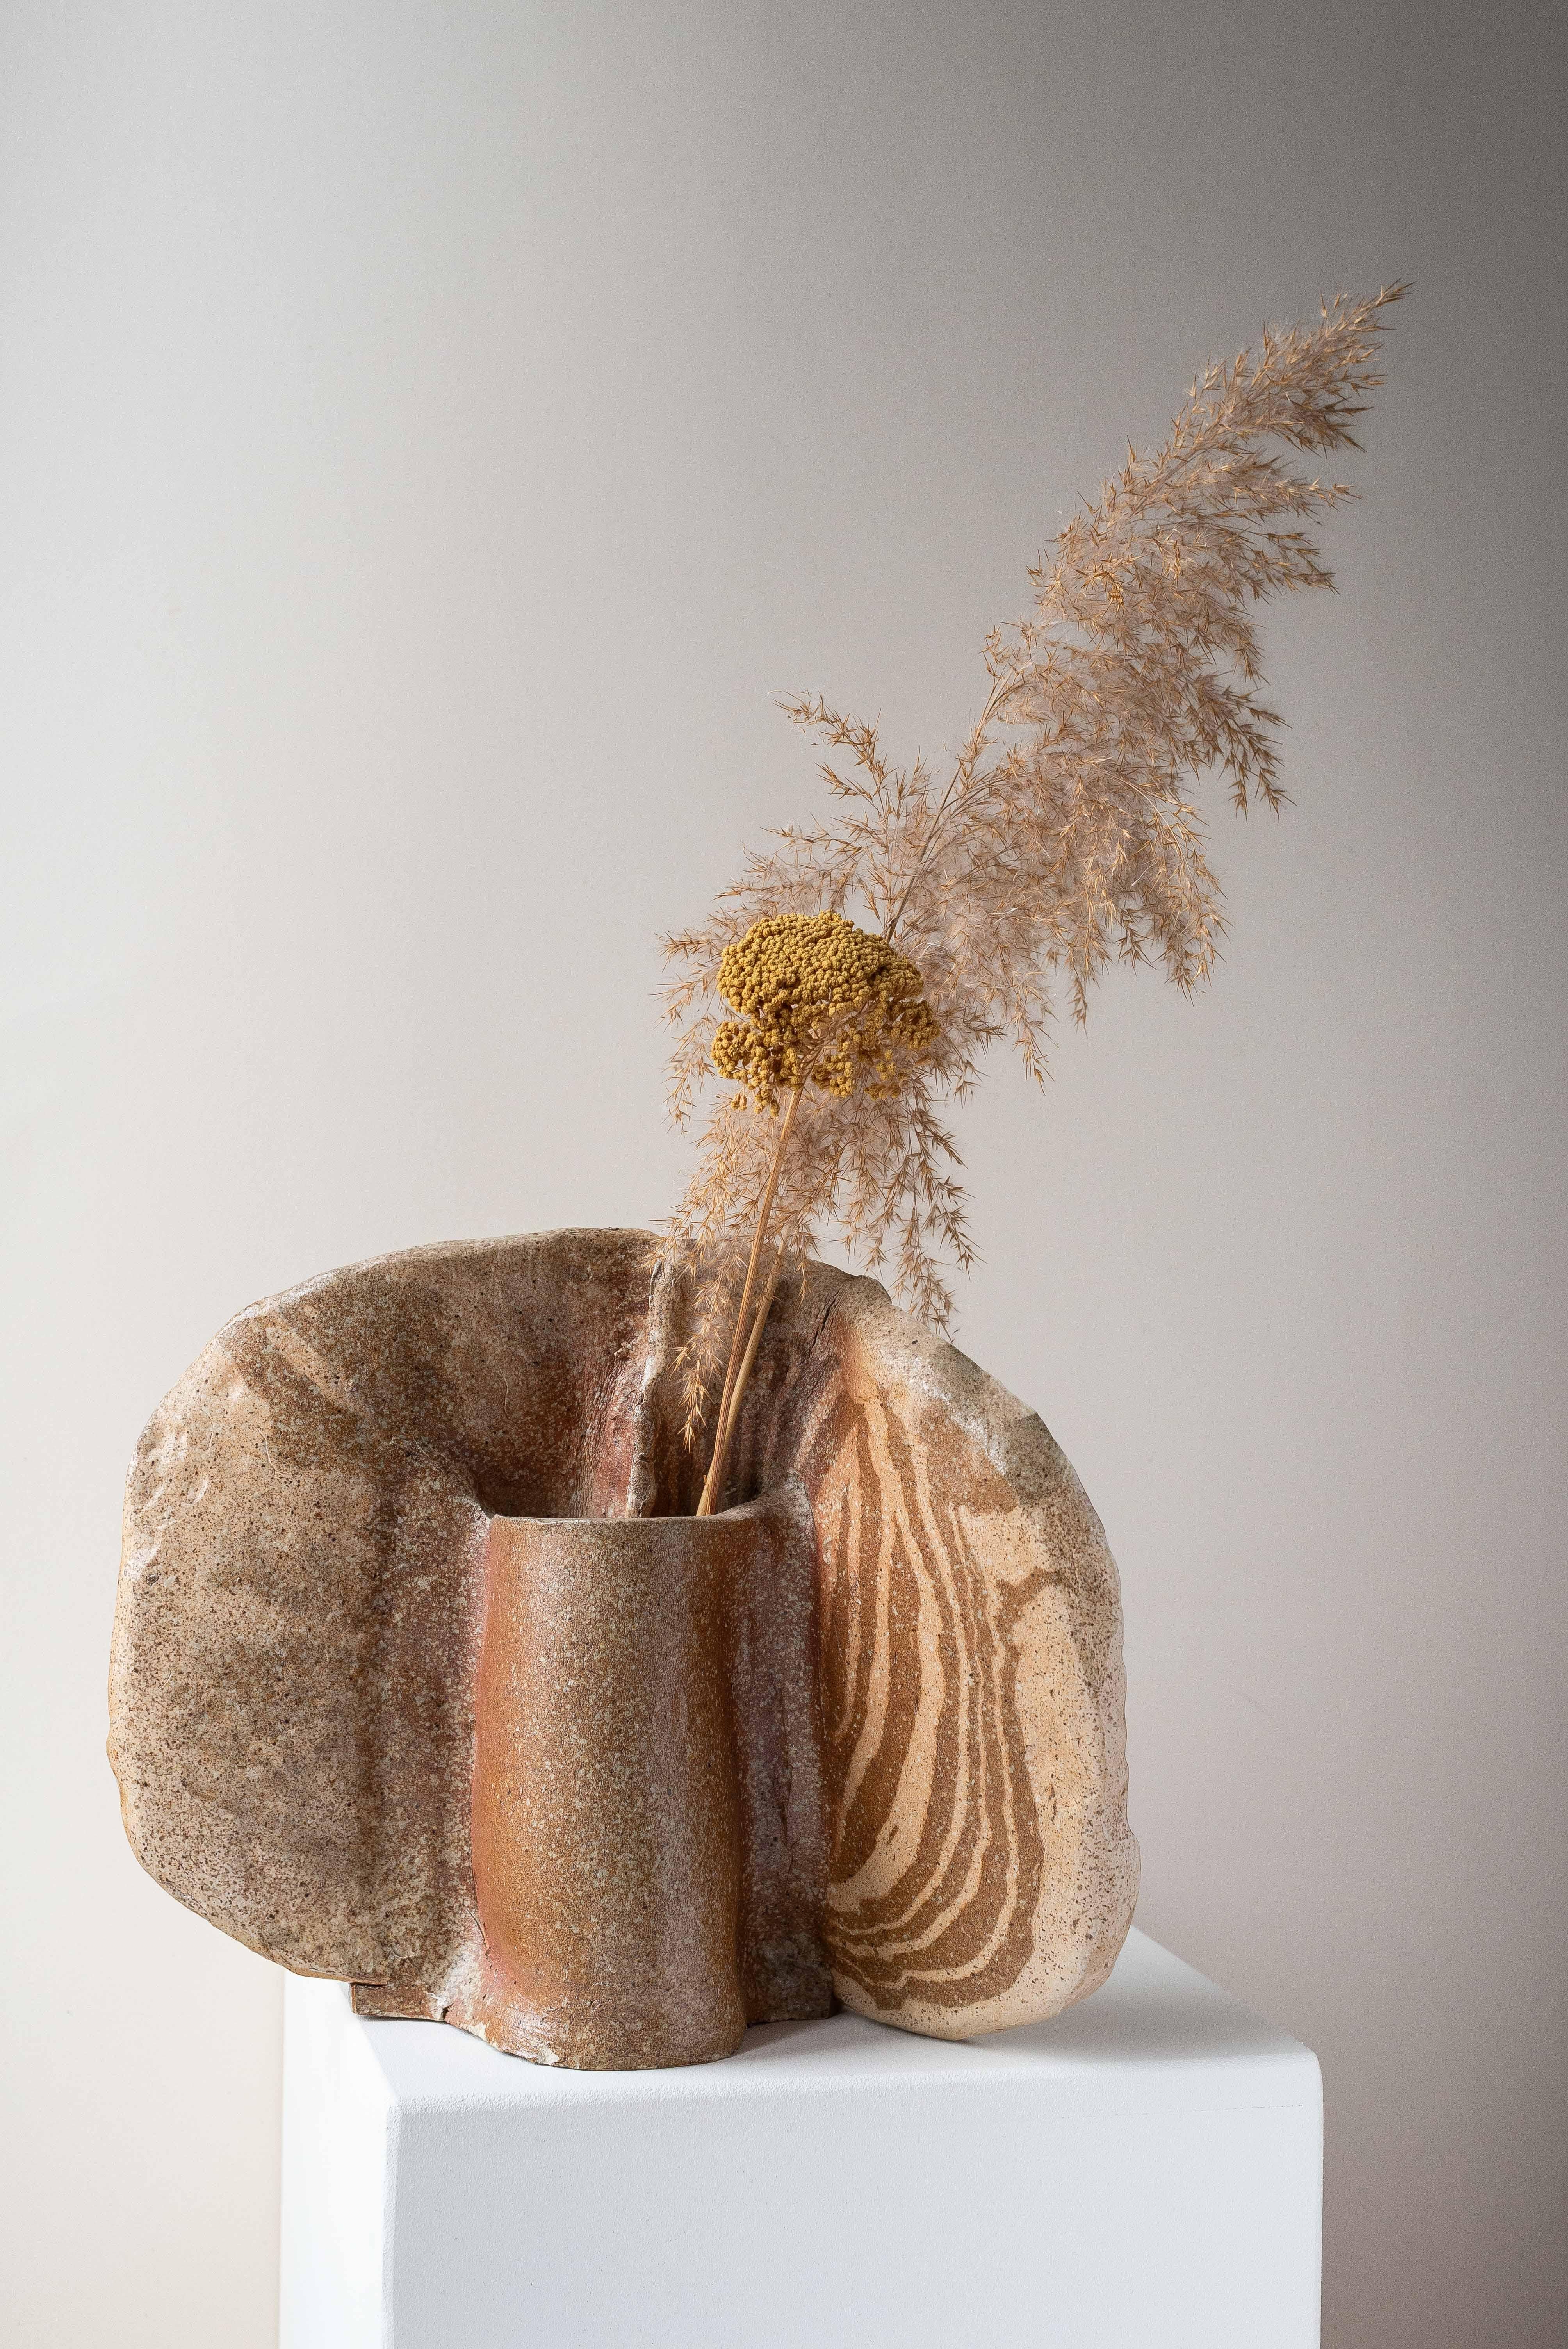 Grand vase en céramique de forme libre, des années 1970.

Une pièce unique avec une caractéristique organique. Les formes générales lui donnent un aspect de coquillage ou de champignon qui le rend si particulier.

Le vase est disponible dans un